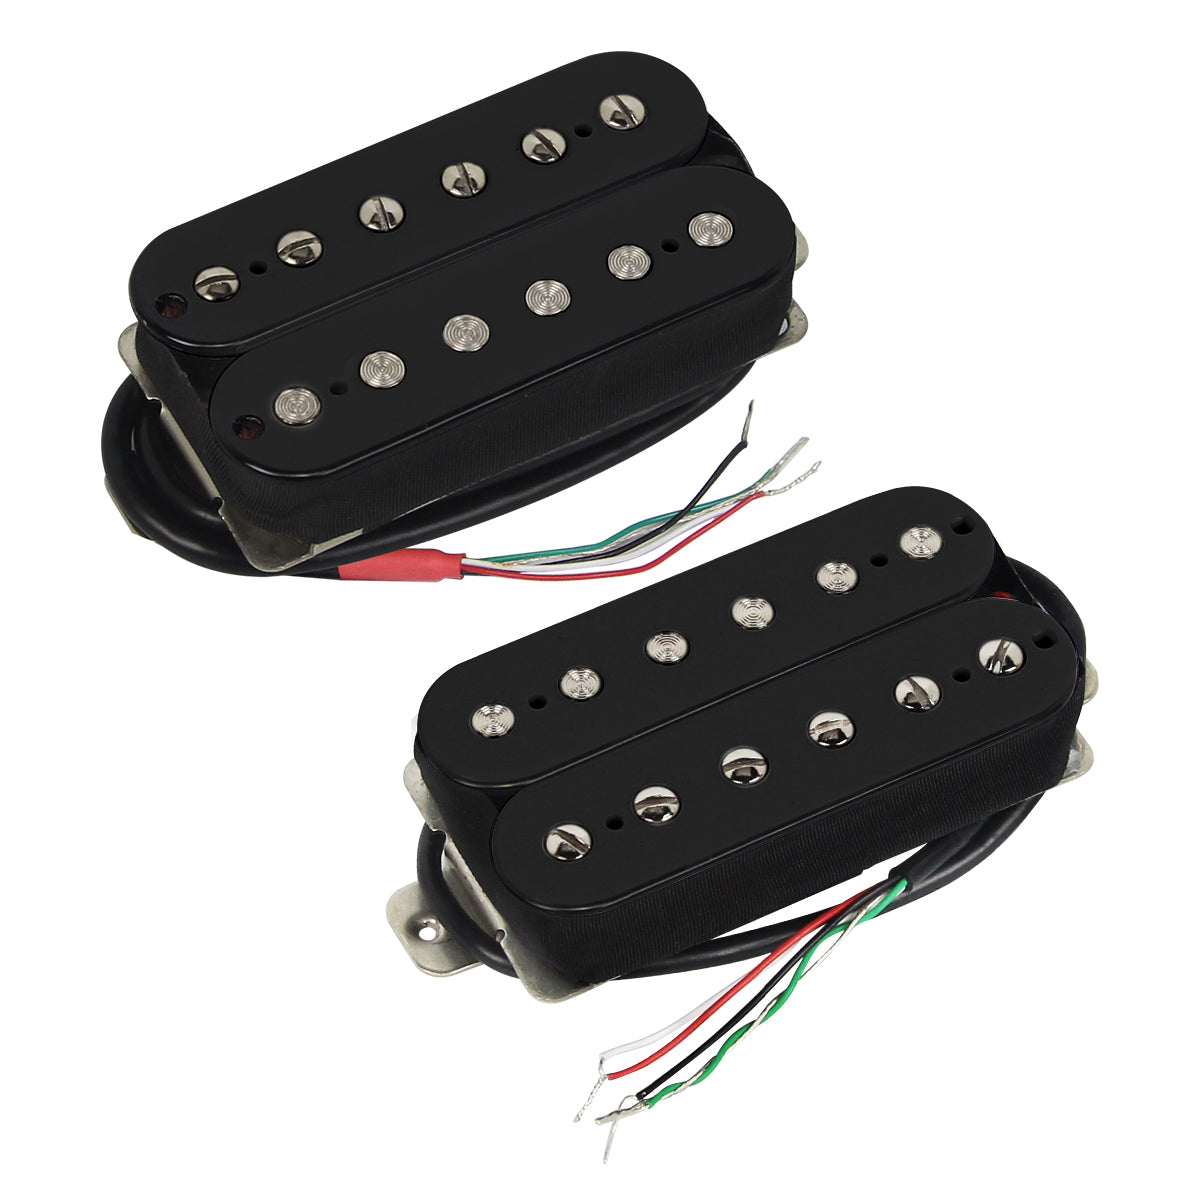 Pastillas Humbucker de doble bobina para guitarra eléctrica FLEOR Alnico 5 para piezas de guitarra eléctrica, 3 colores disponibles